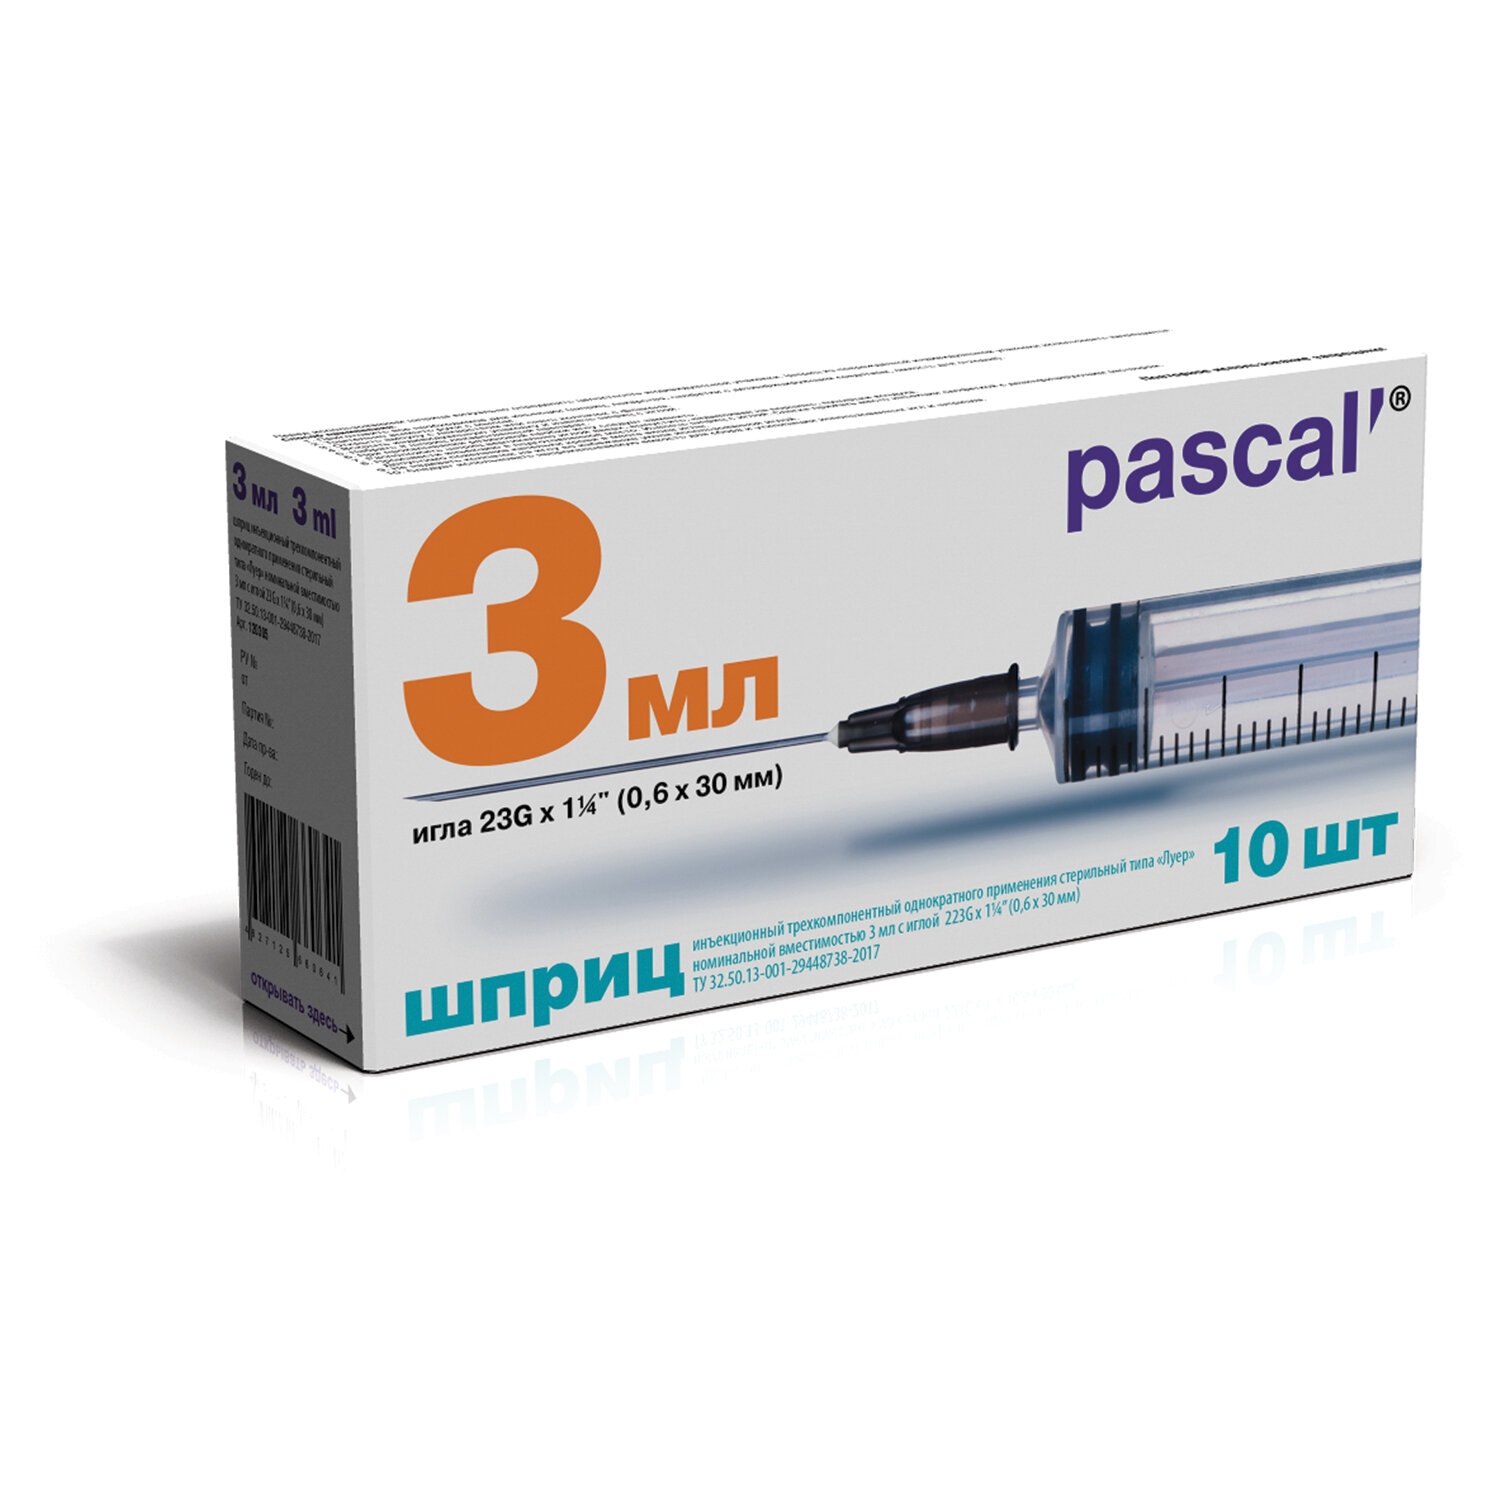 Шприц 3-х компонентный PASCAL 120305, 3 мл, 23G, 15 упаковок по 10 шт.